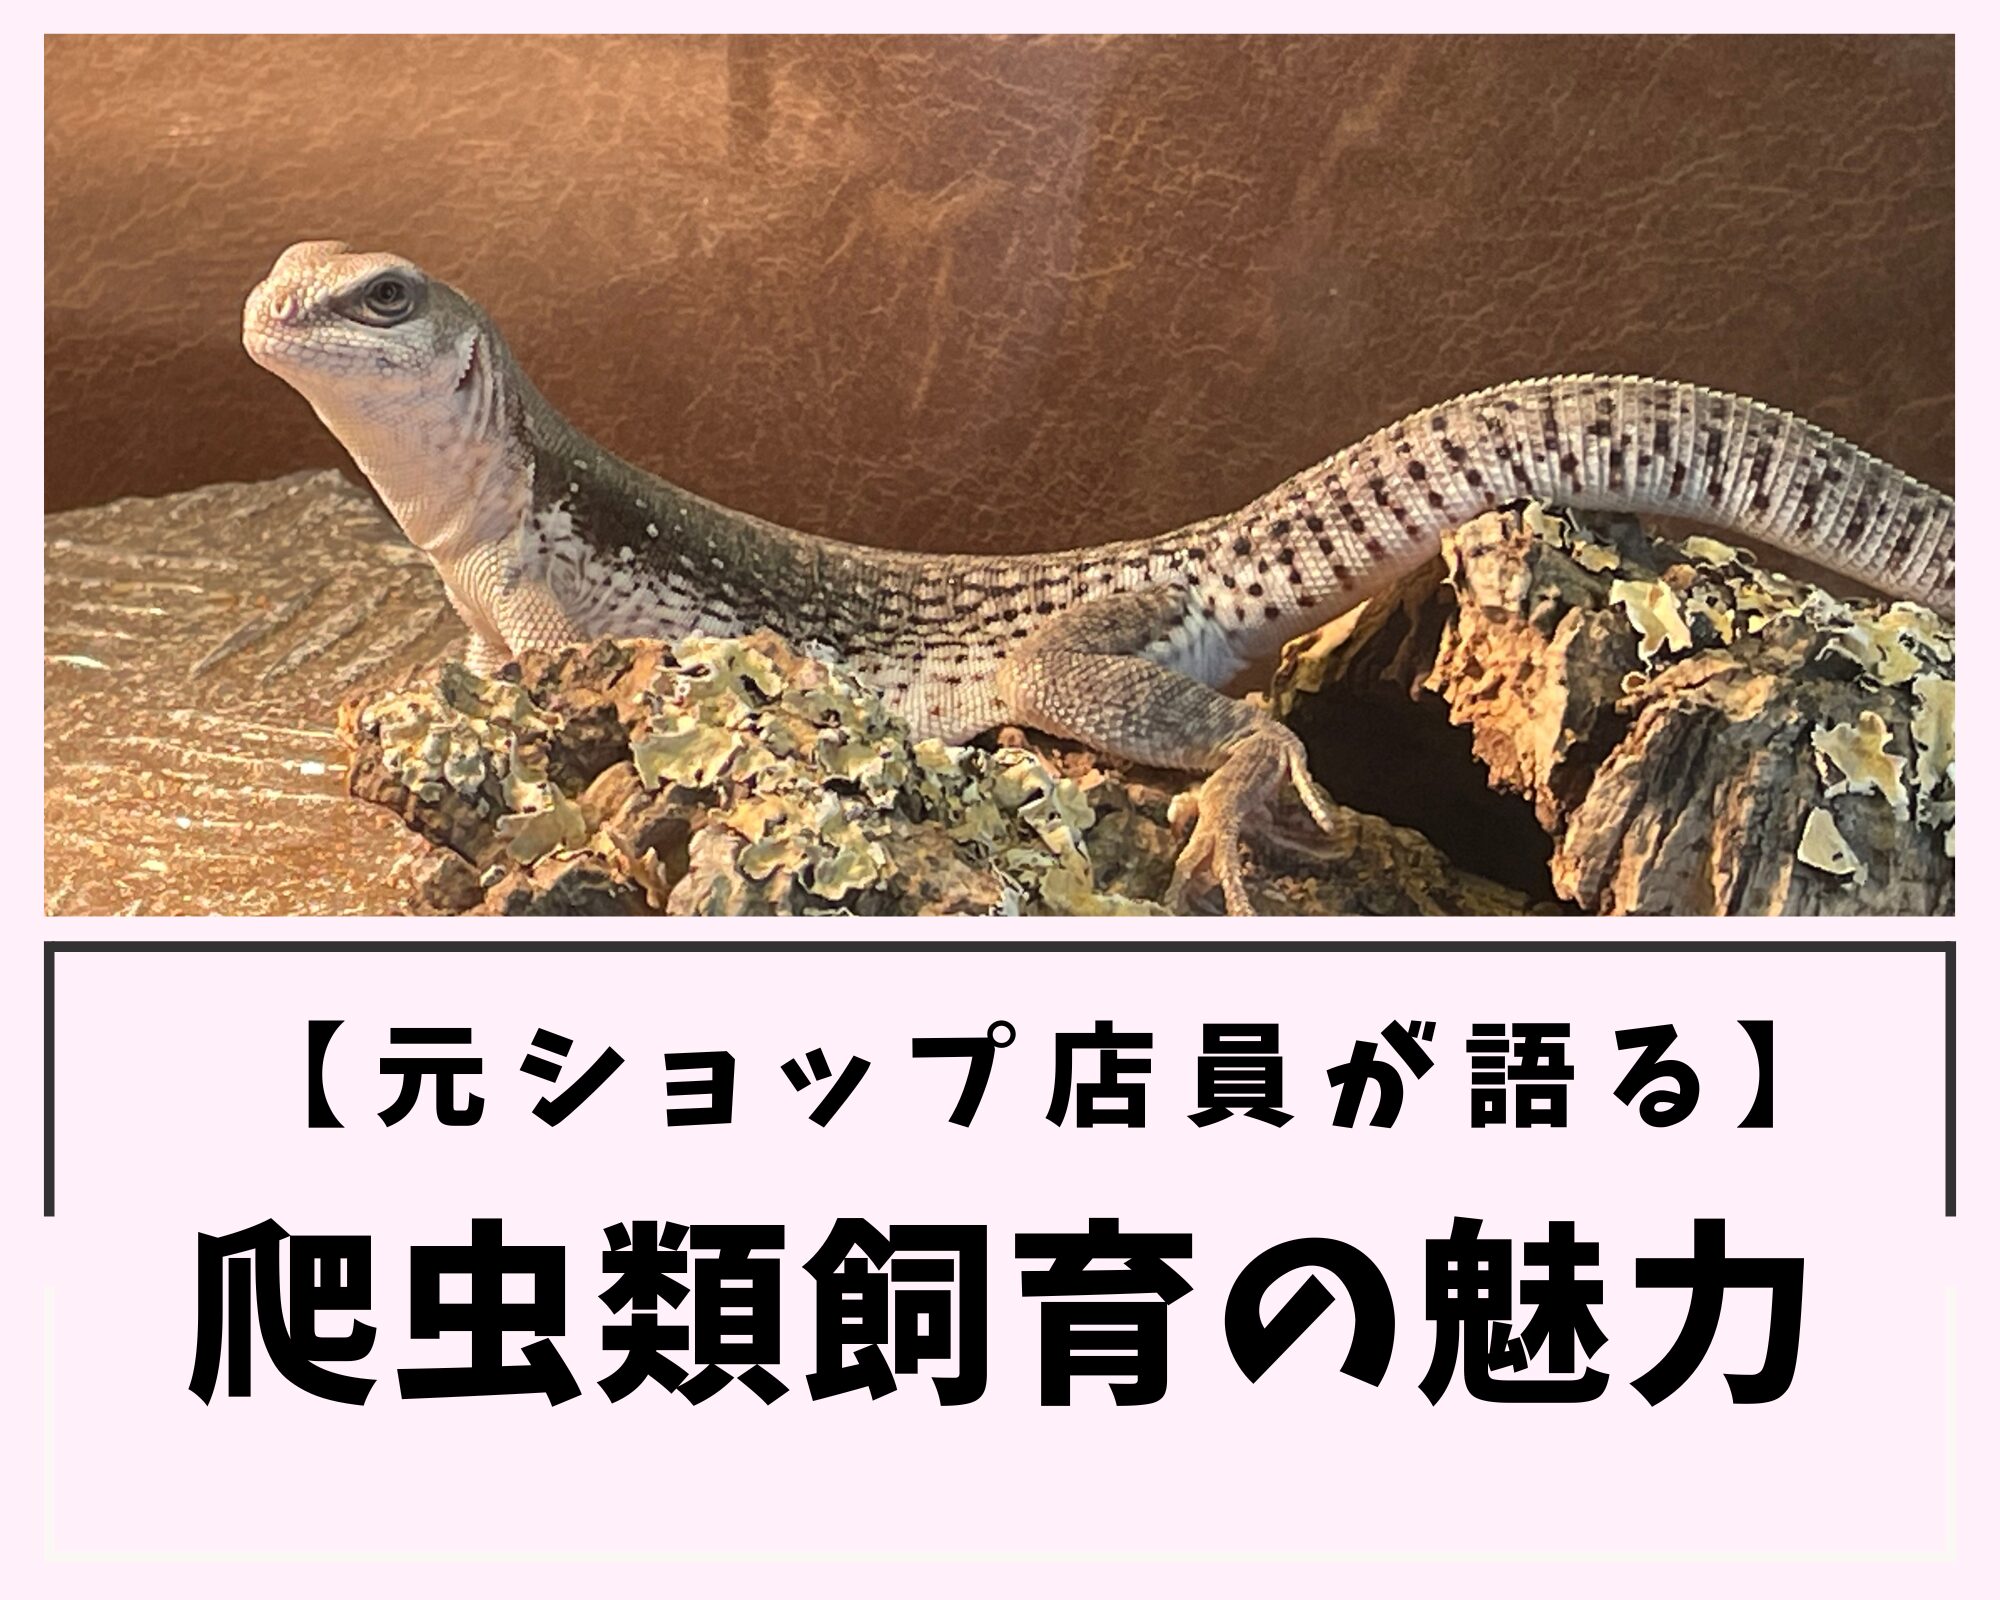 【元ショップ店員が語る】爬虫類飼育の魅力